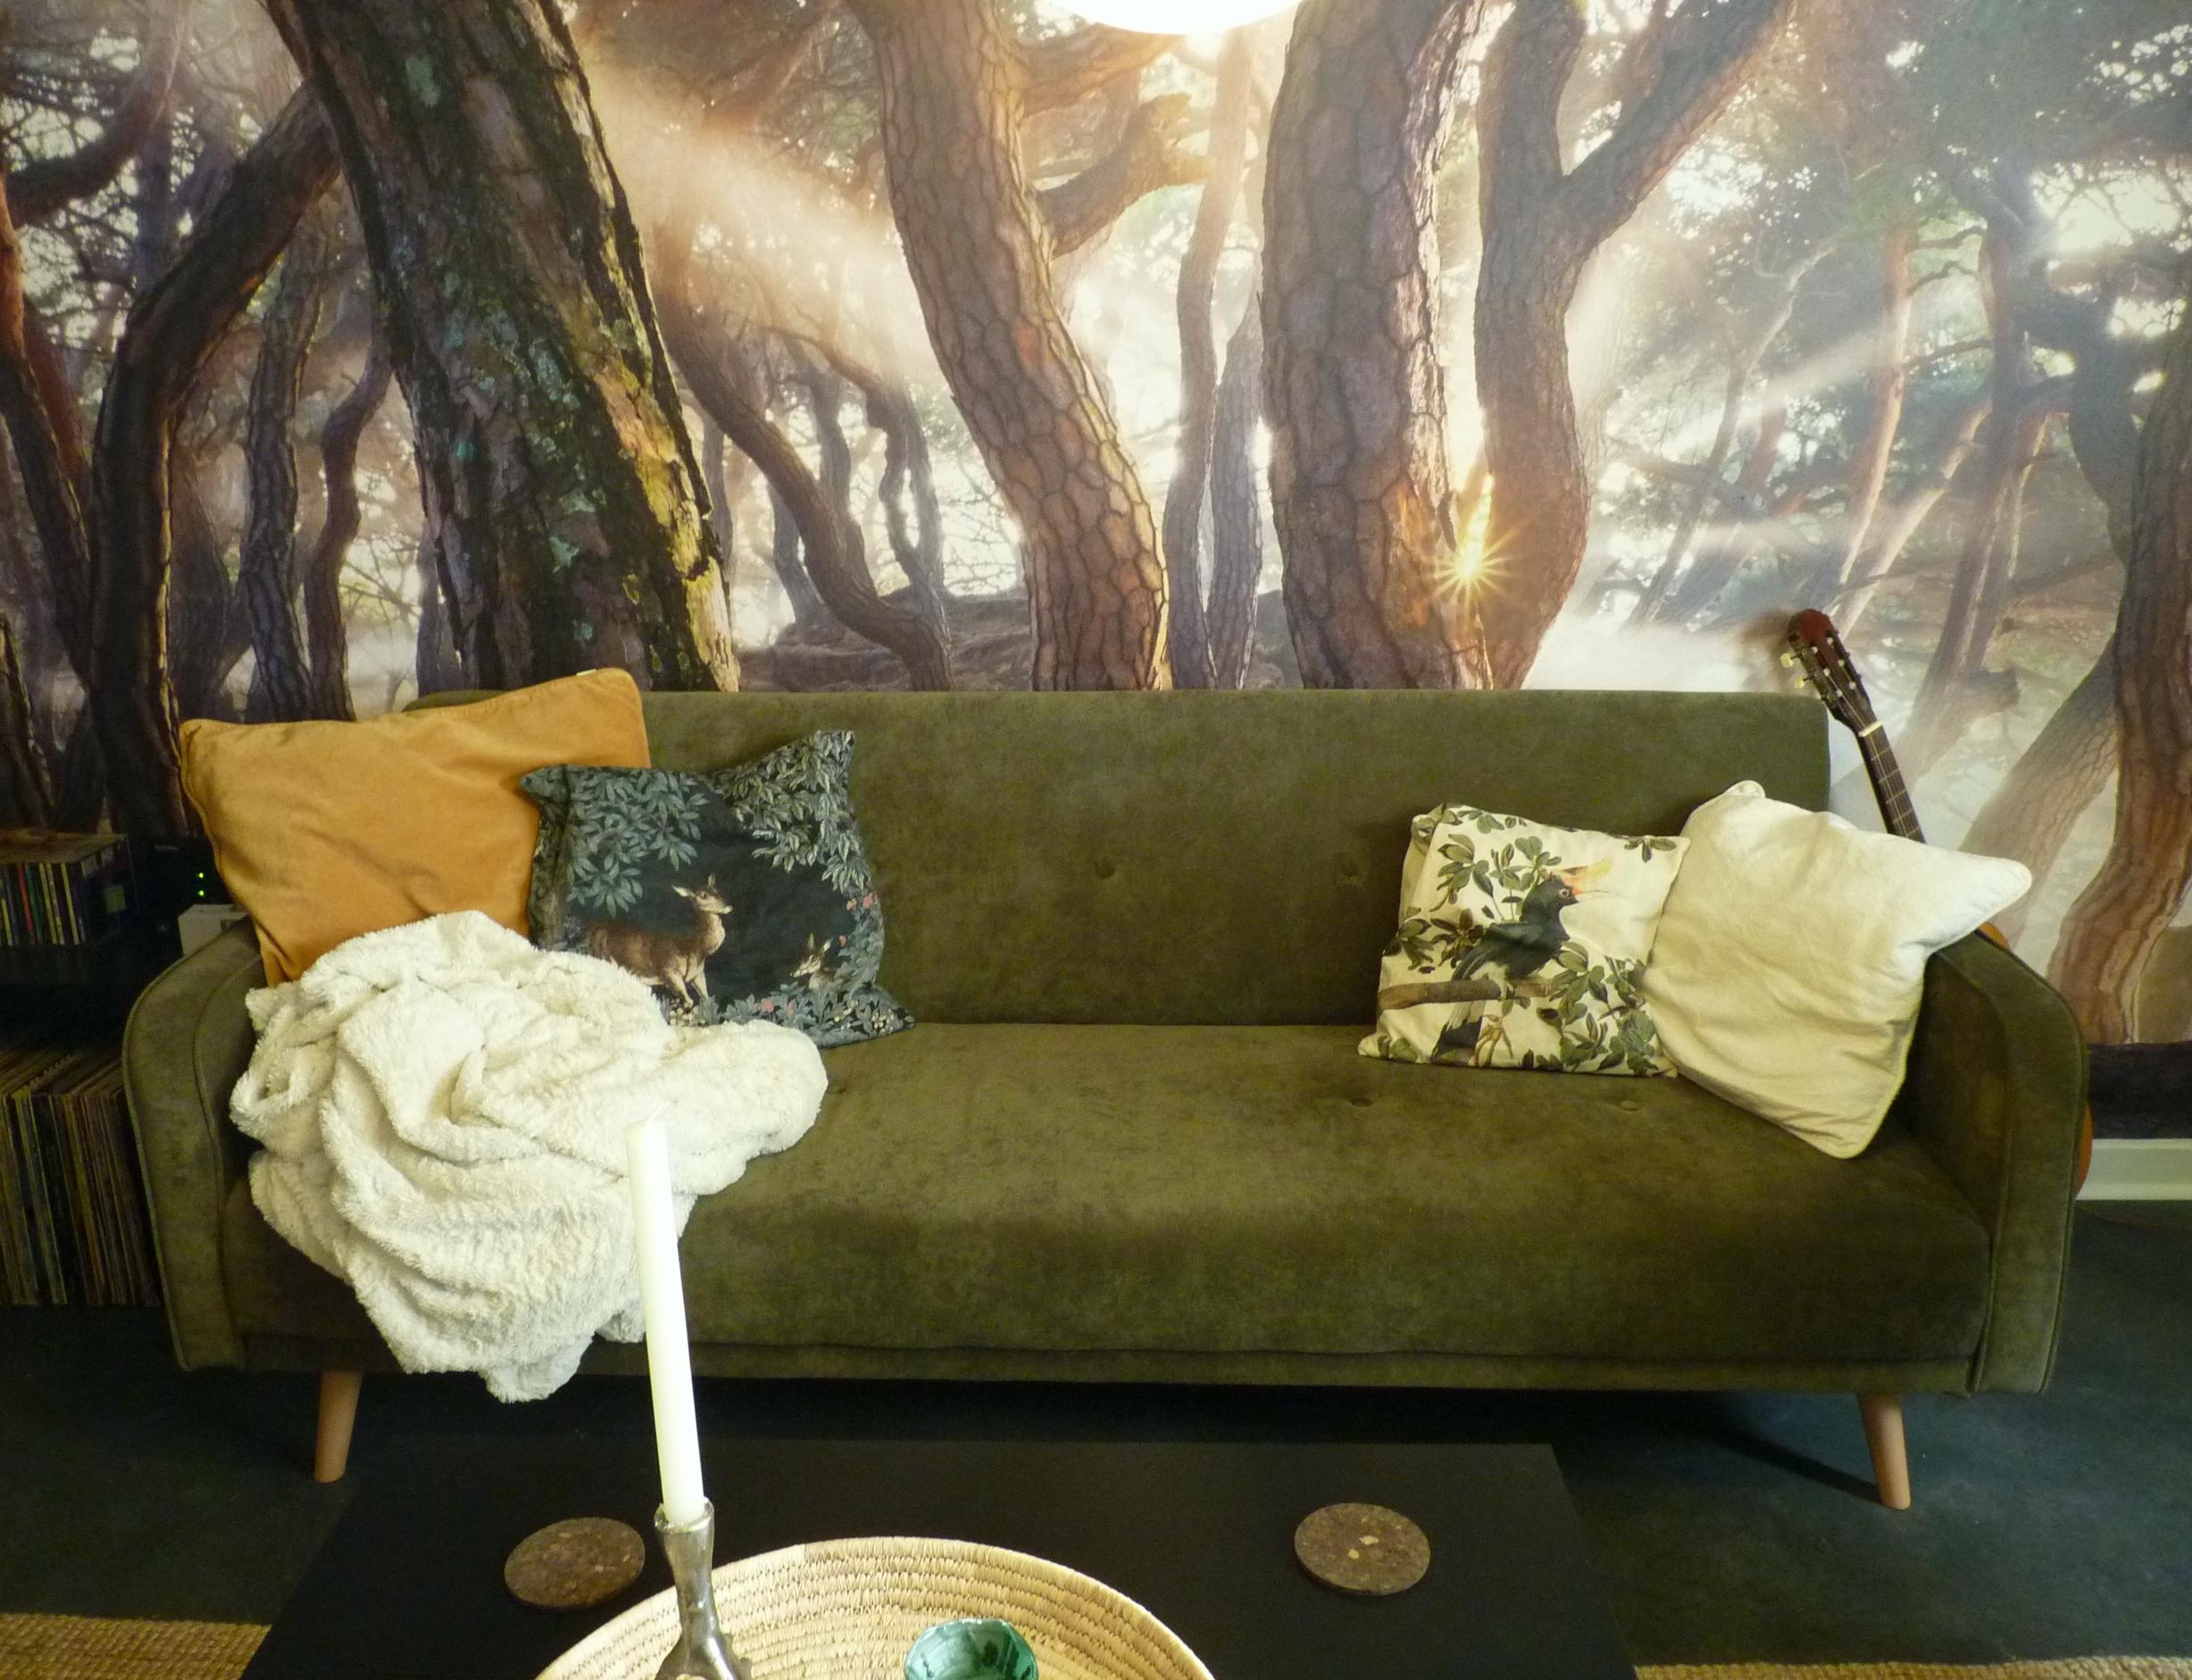 Wald und Waldtiere
#wohnzimmer #sofa #fototapete #grün #natur #kiefern #bäume